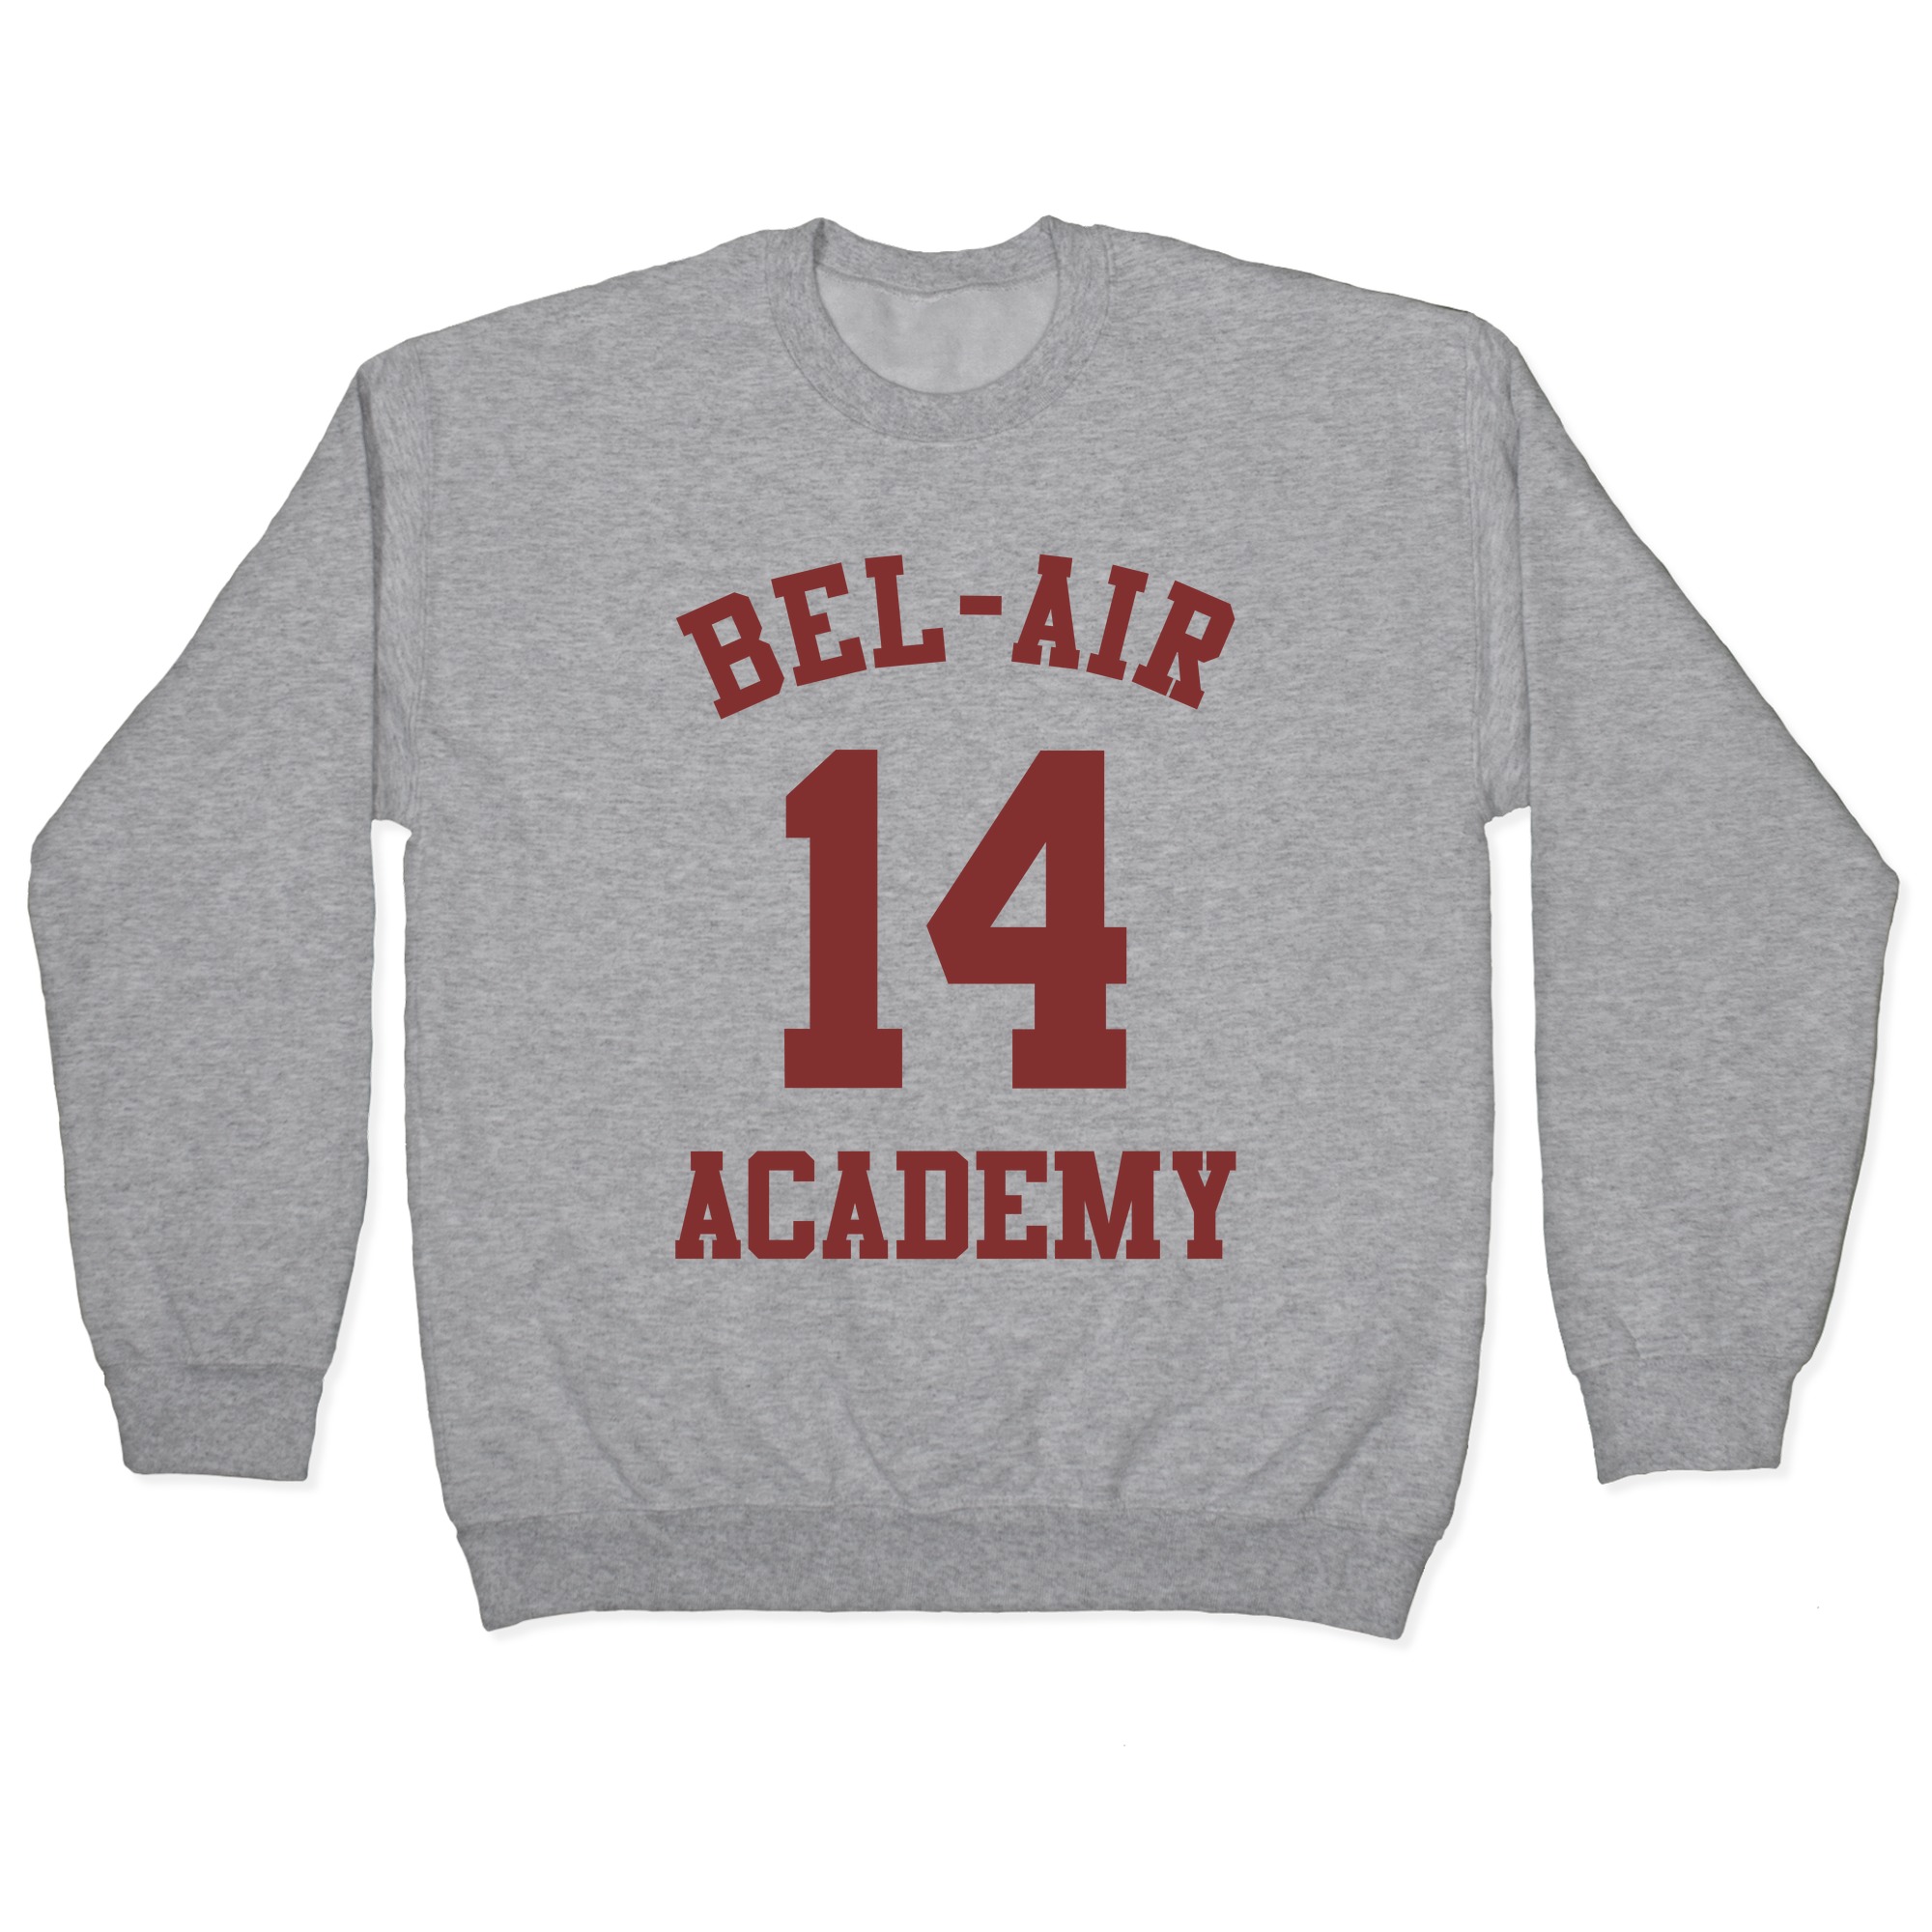 bel air 14 academy jersey